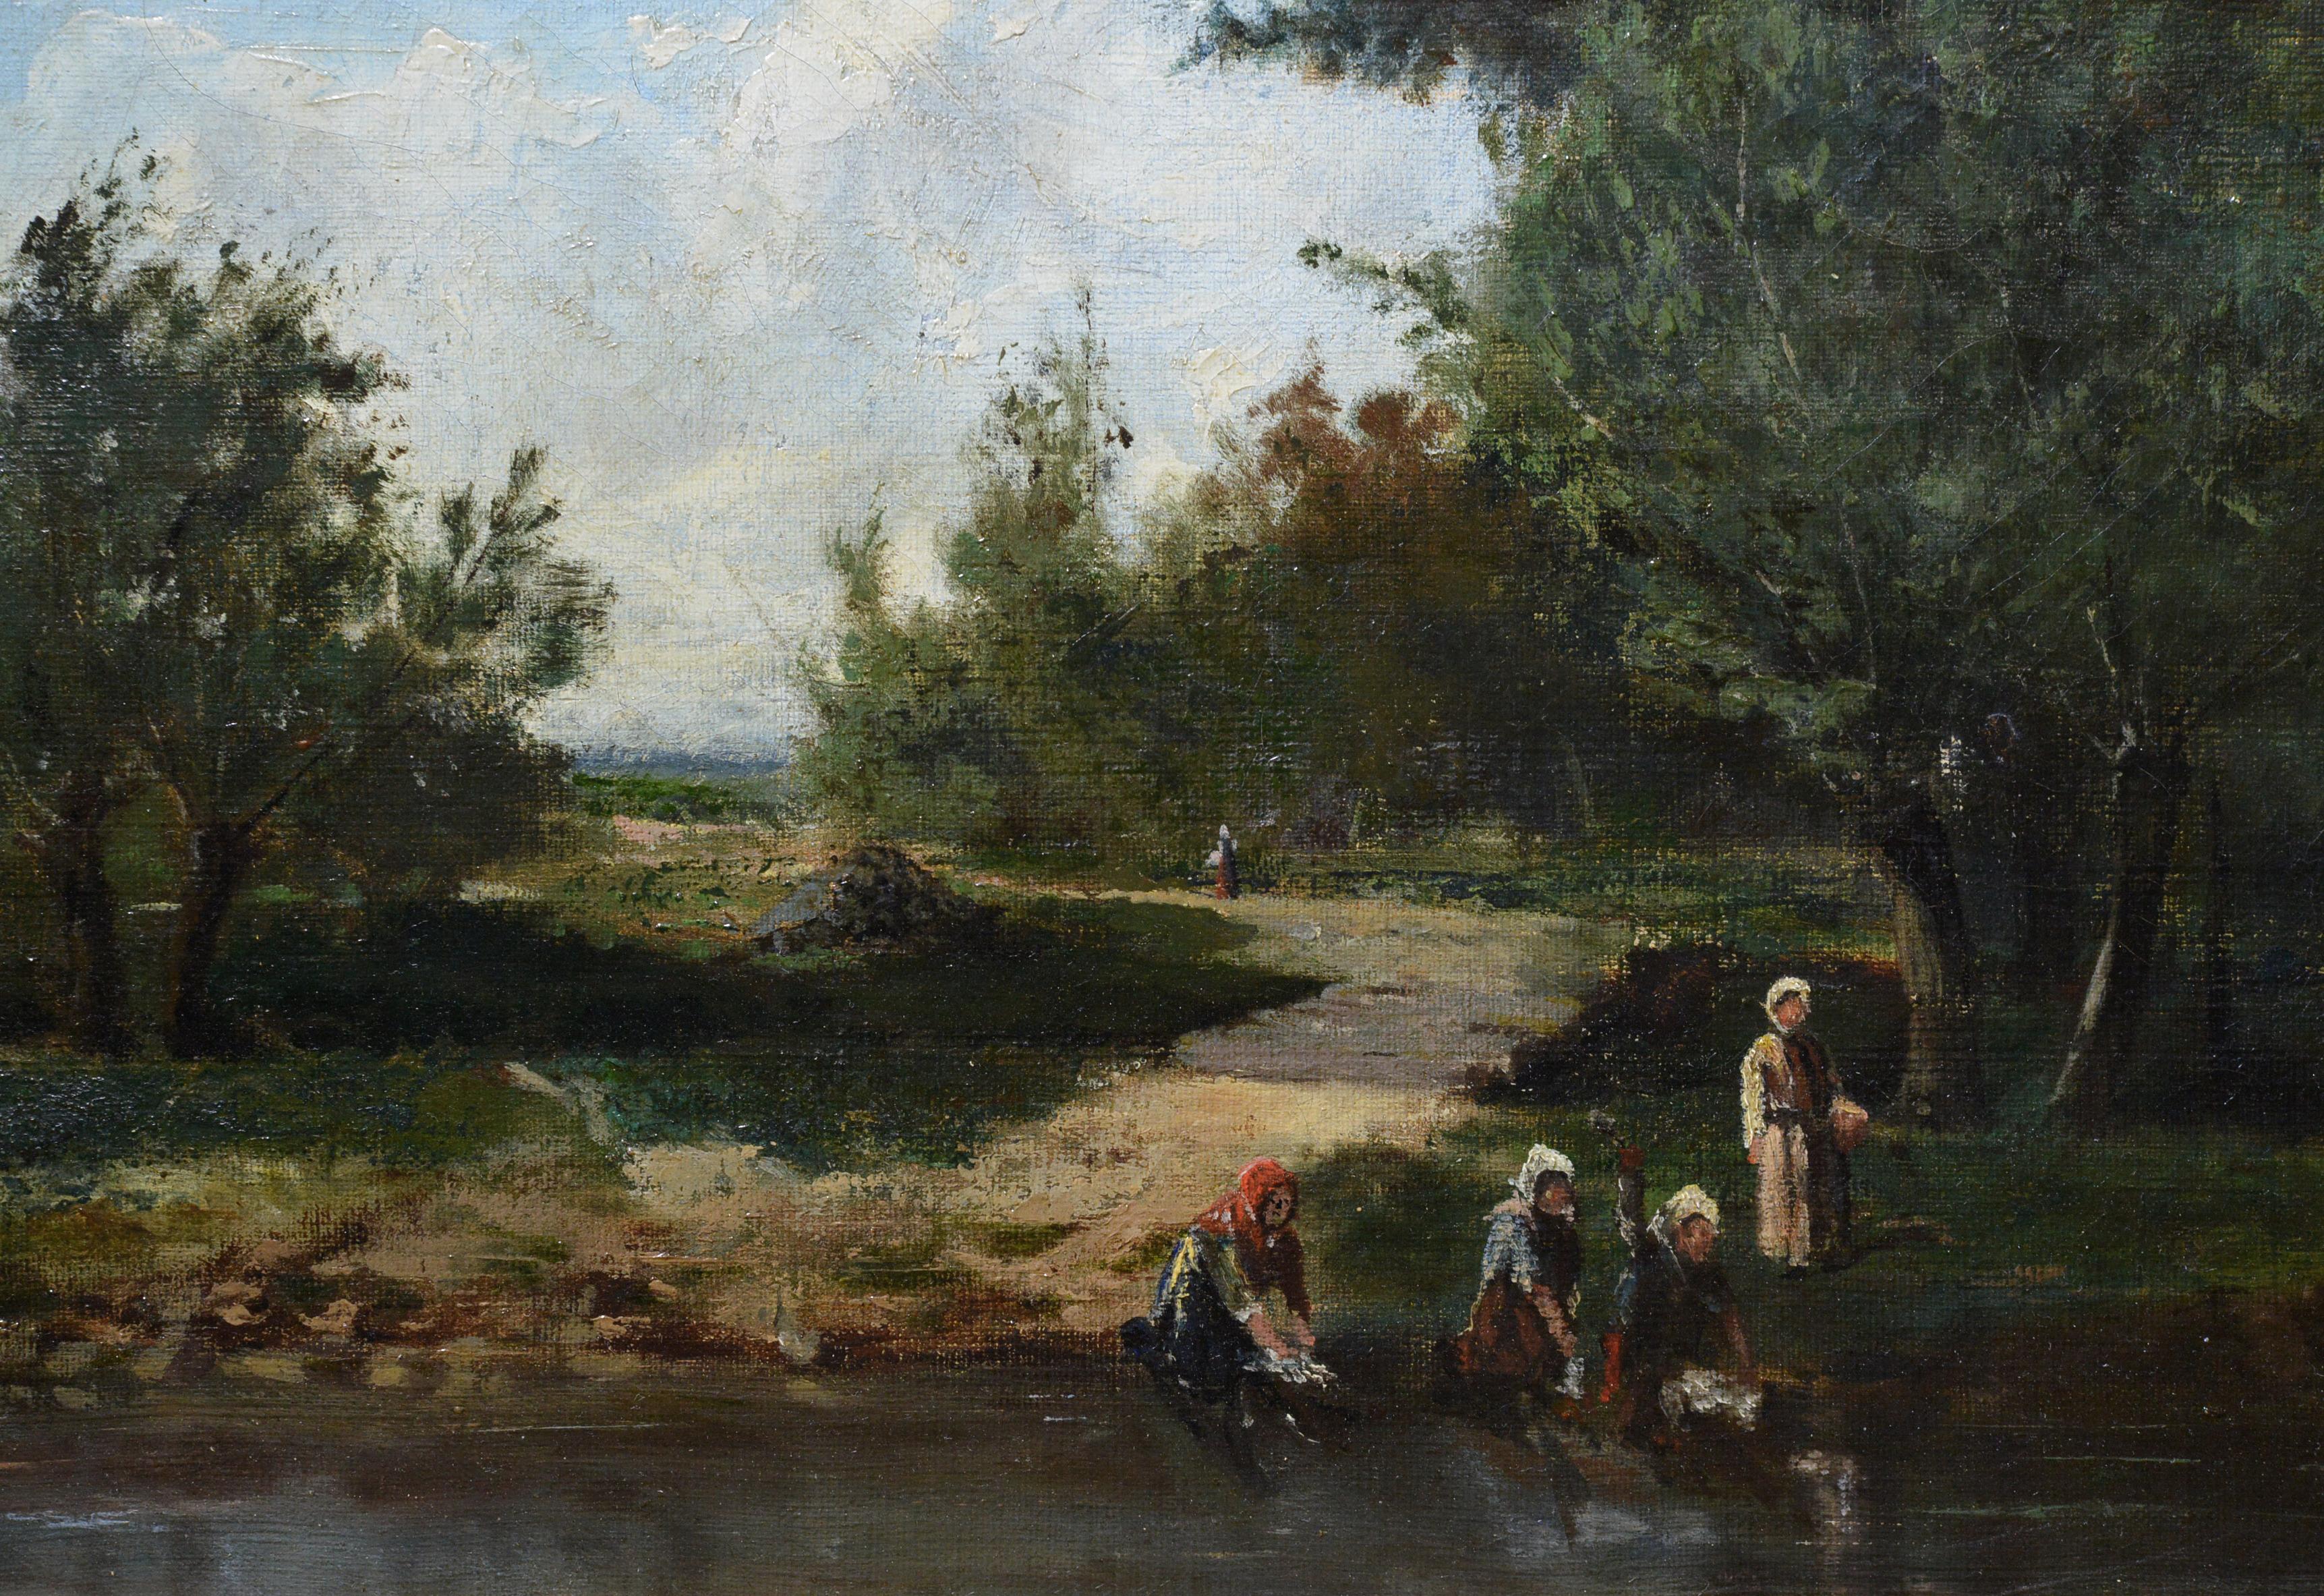 Blanchisseuses sur la rivière Paysage Barbizonien du 19ème siècle par un Maître Français - École de Barbizon Painting par Unknown